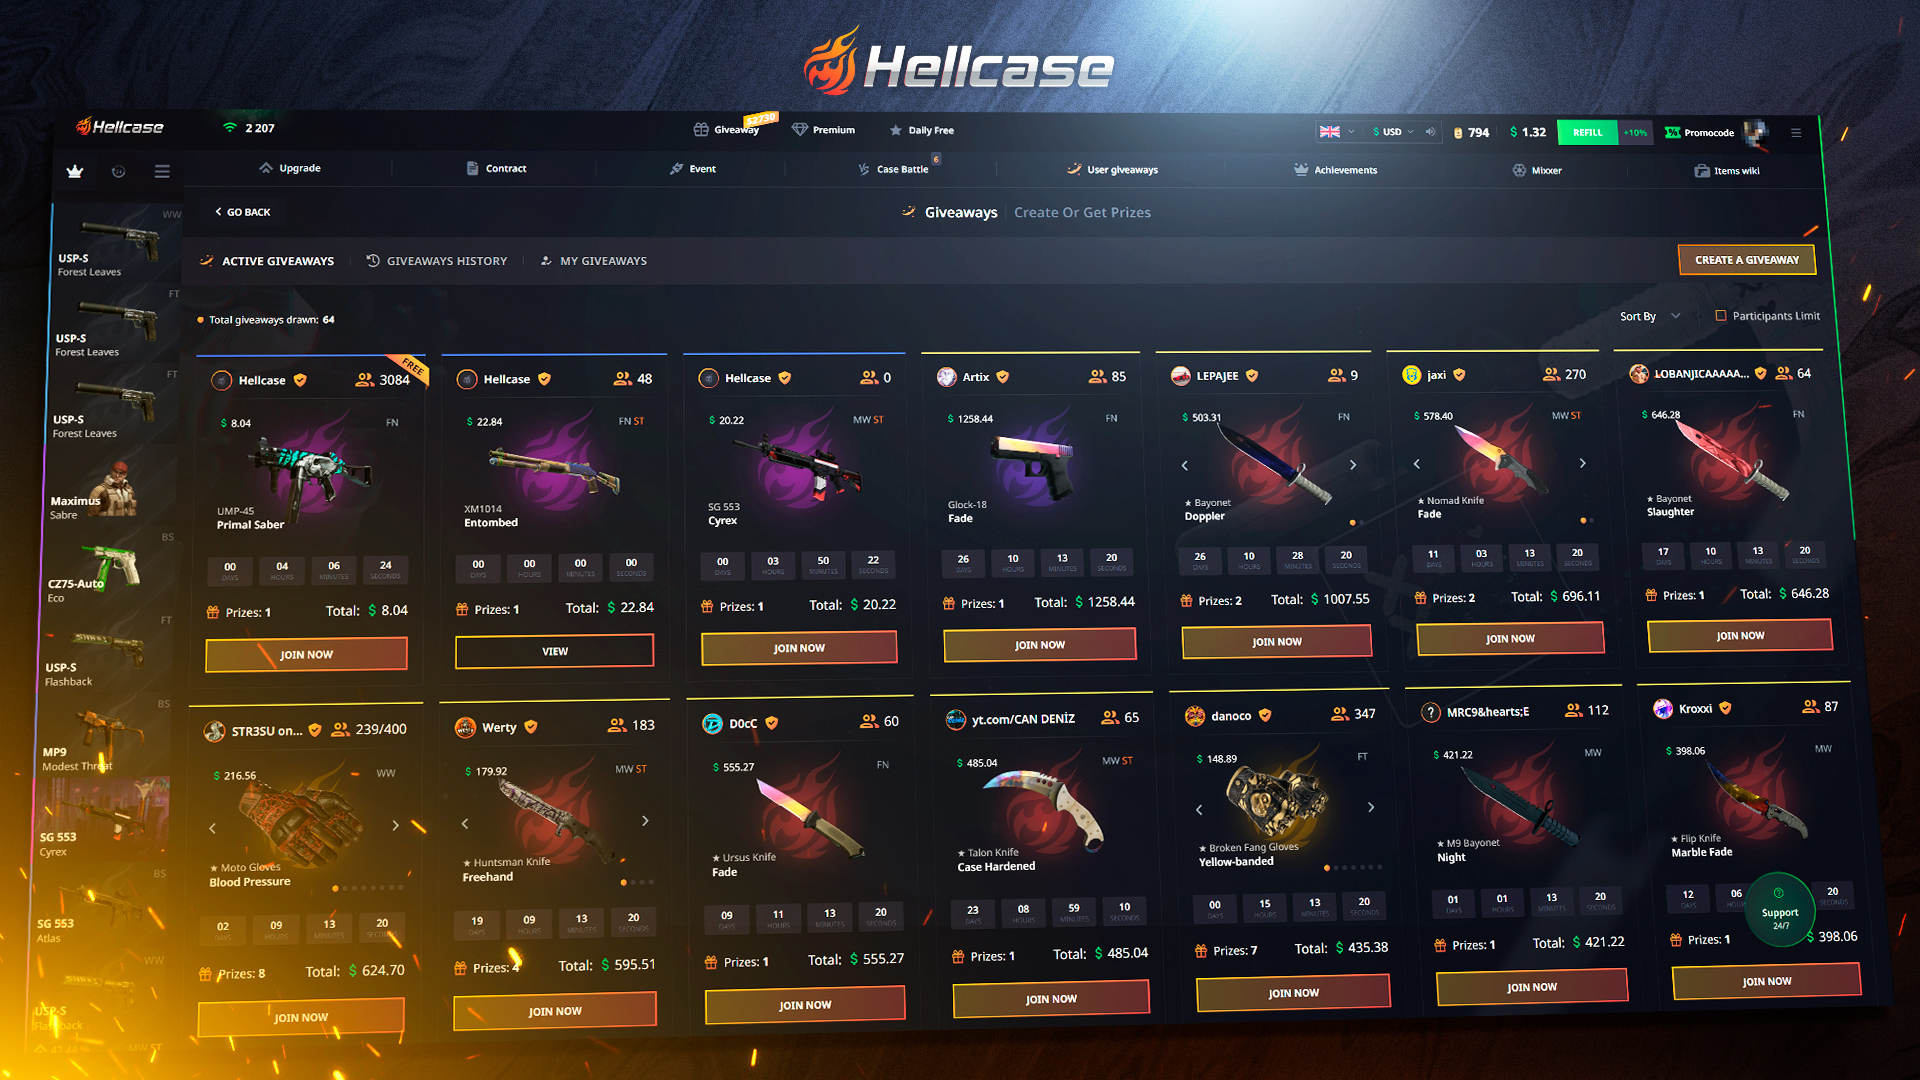 Hellcase.com 10 USD Wallet Card Code